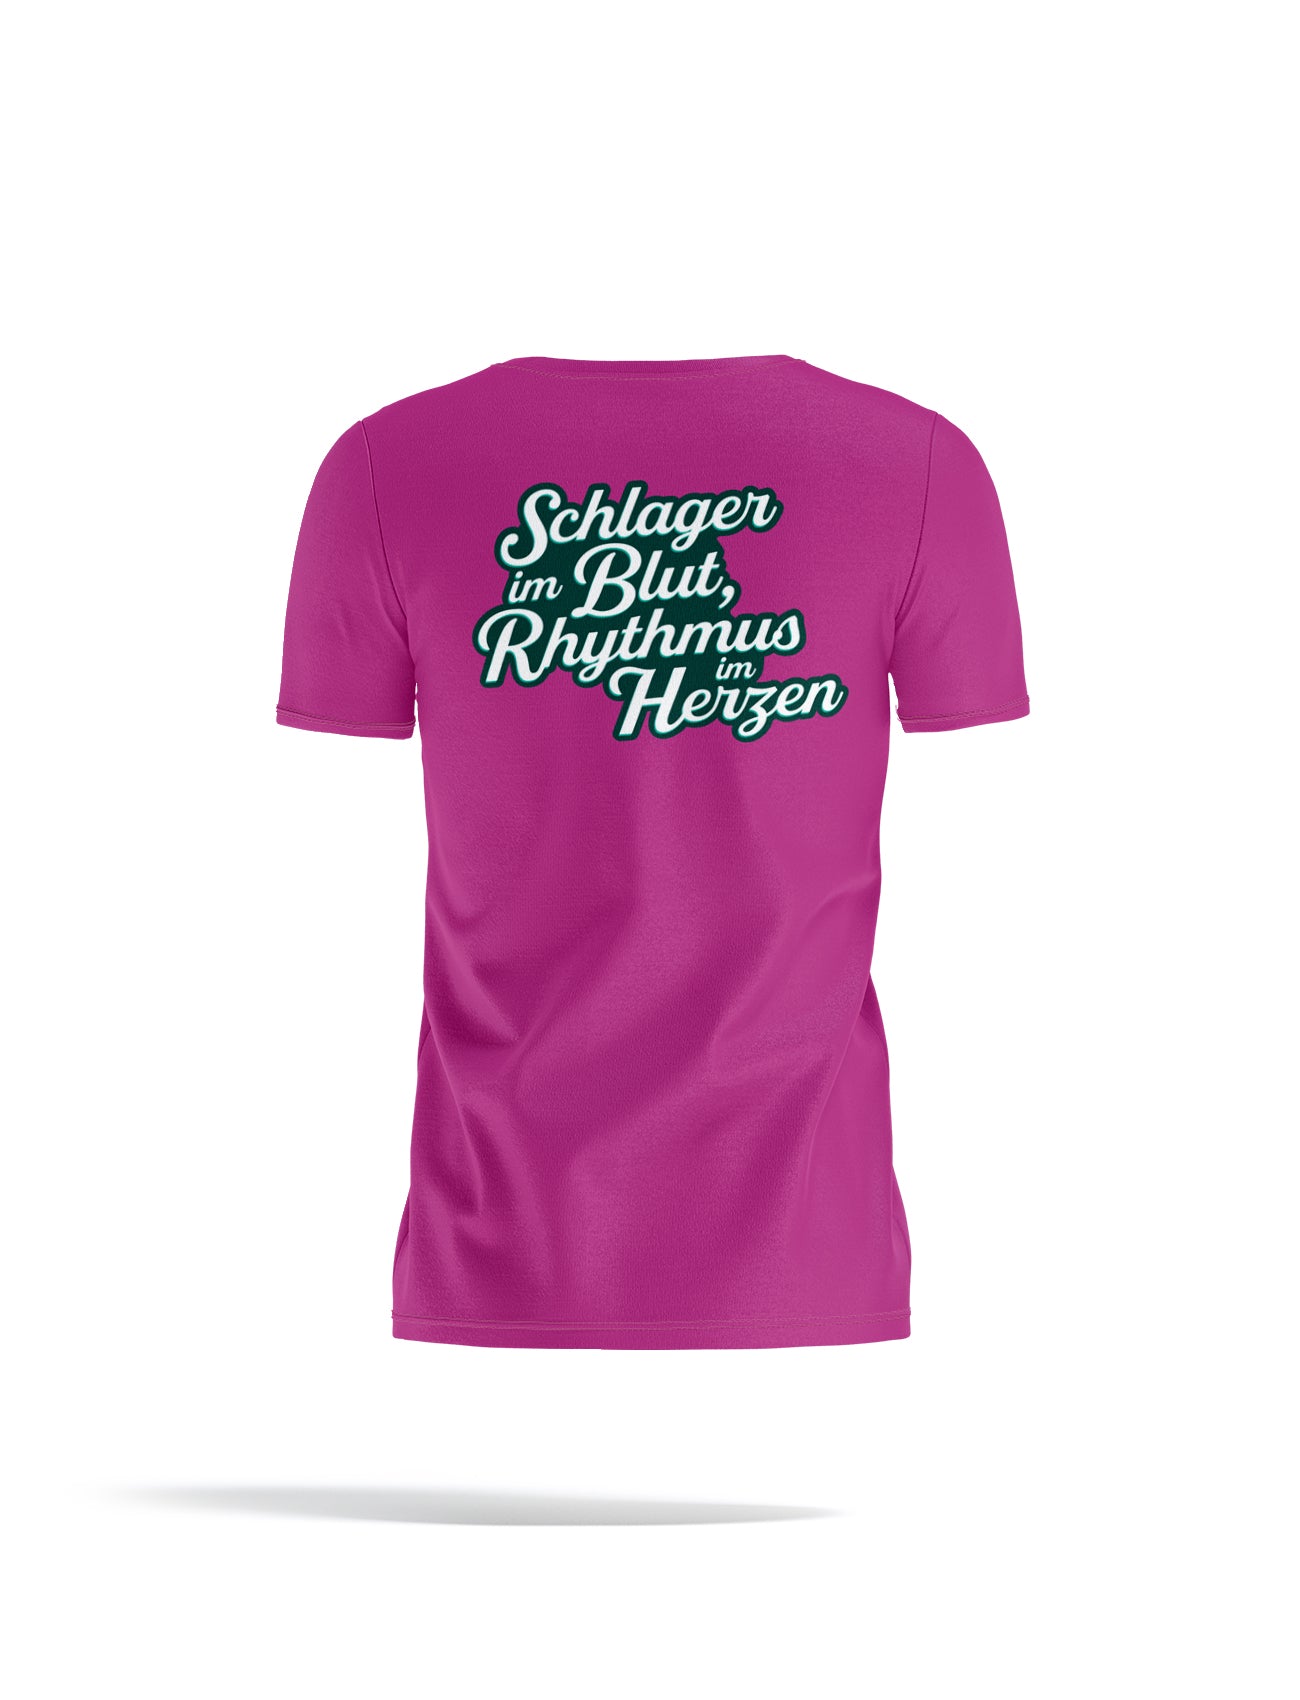 Damen T-Shirt in Pink, Logo vorne, Rückseite der Spruch "Schlager im Blut, Rhythmus im Herzen"